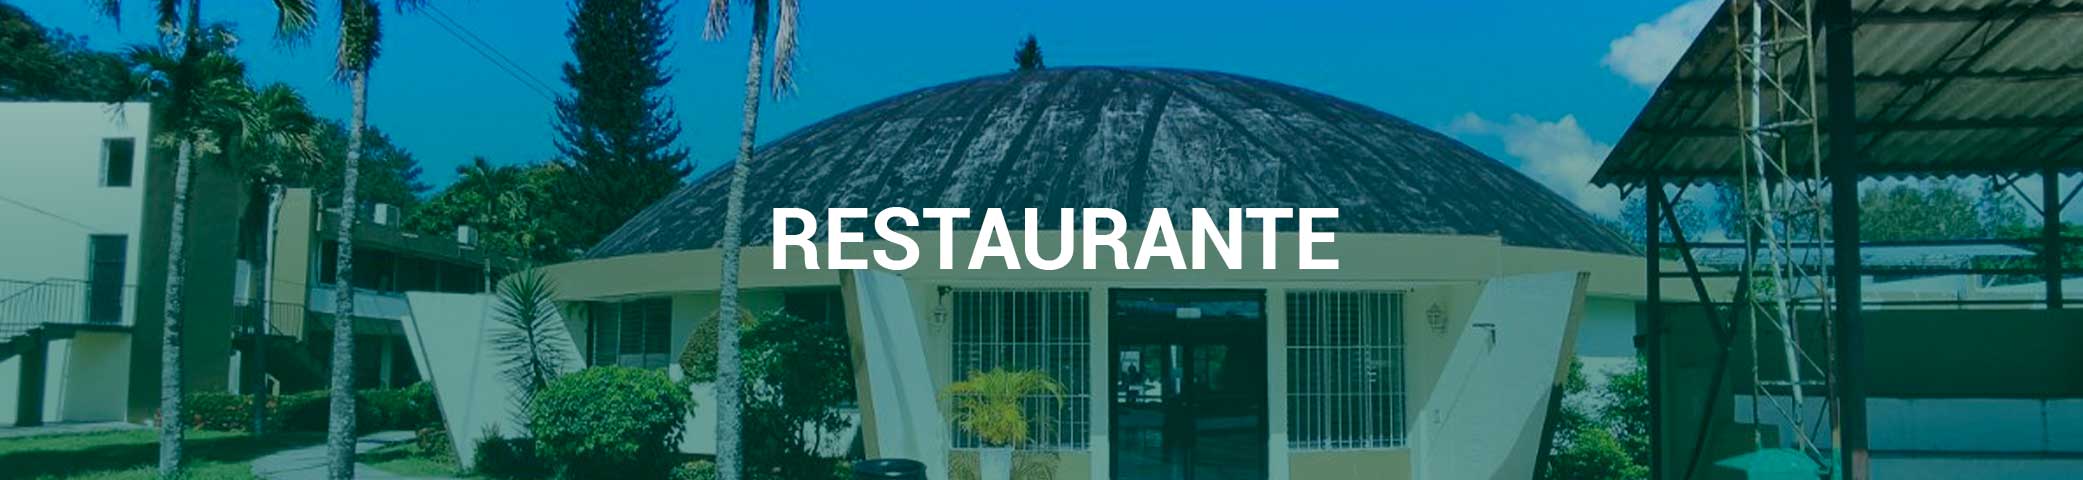 Restaurante-unad